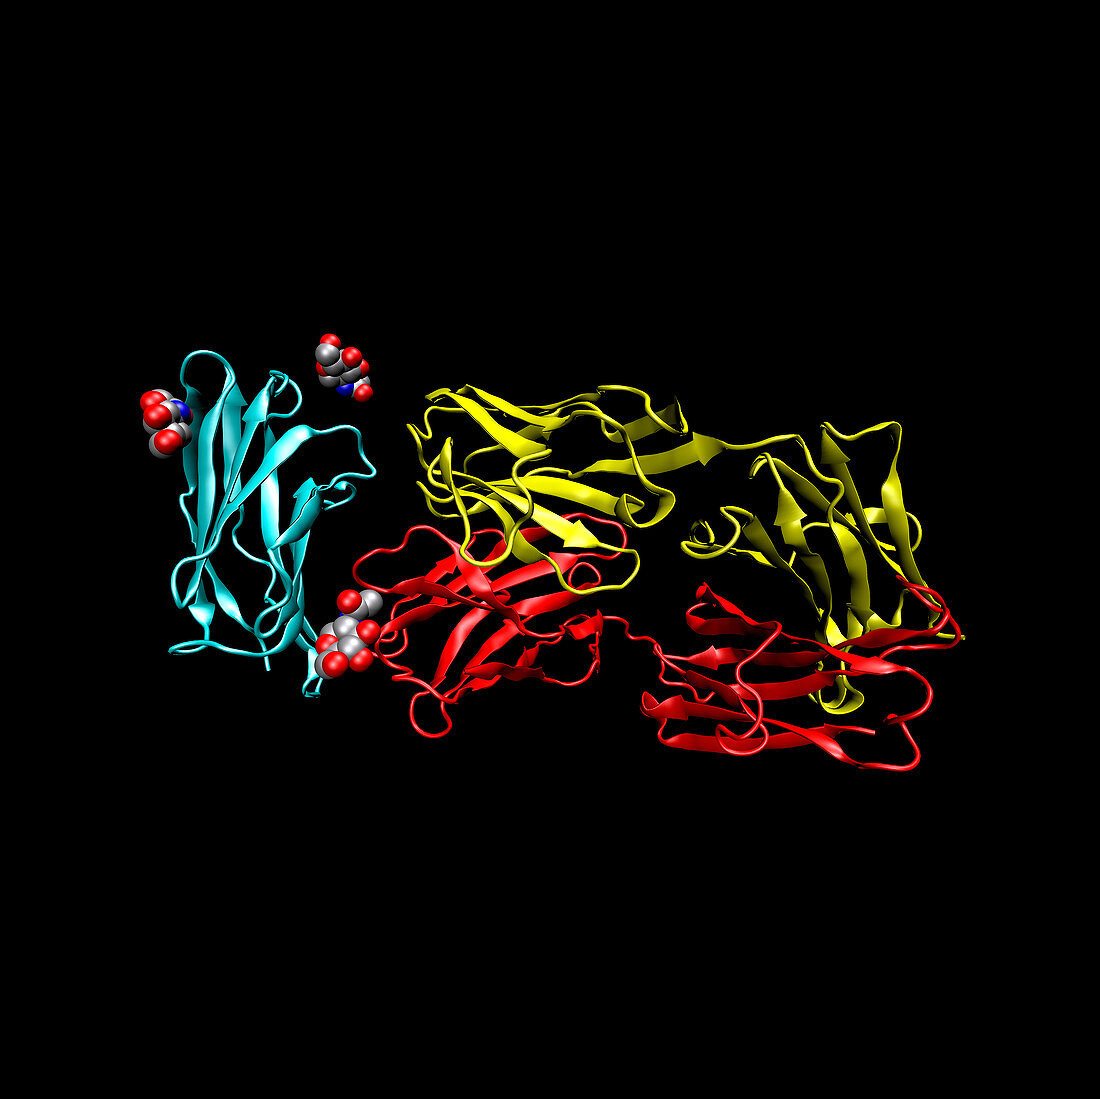 TGN1412 drug molecule